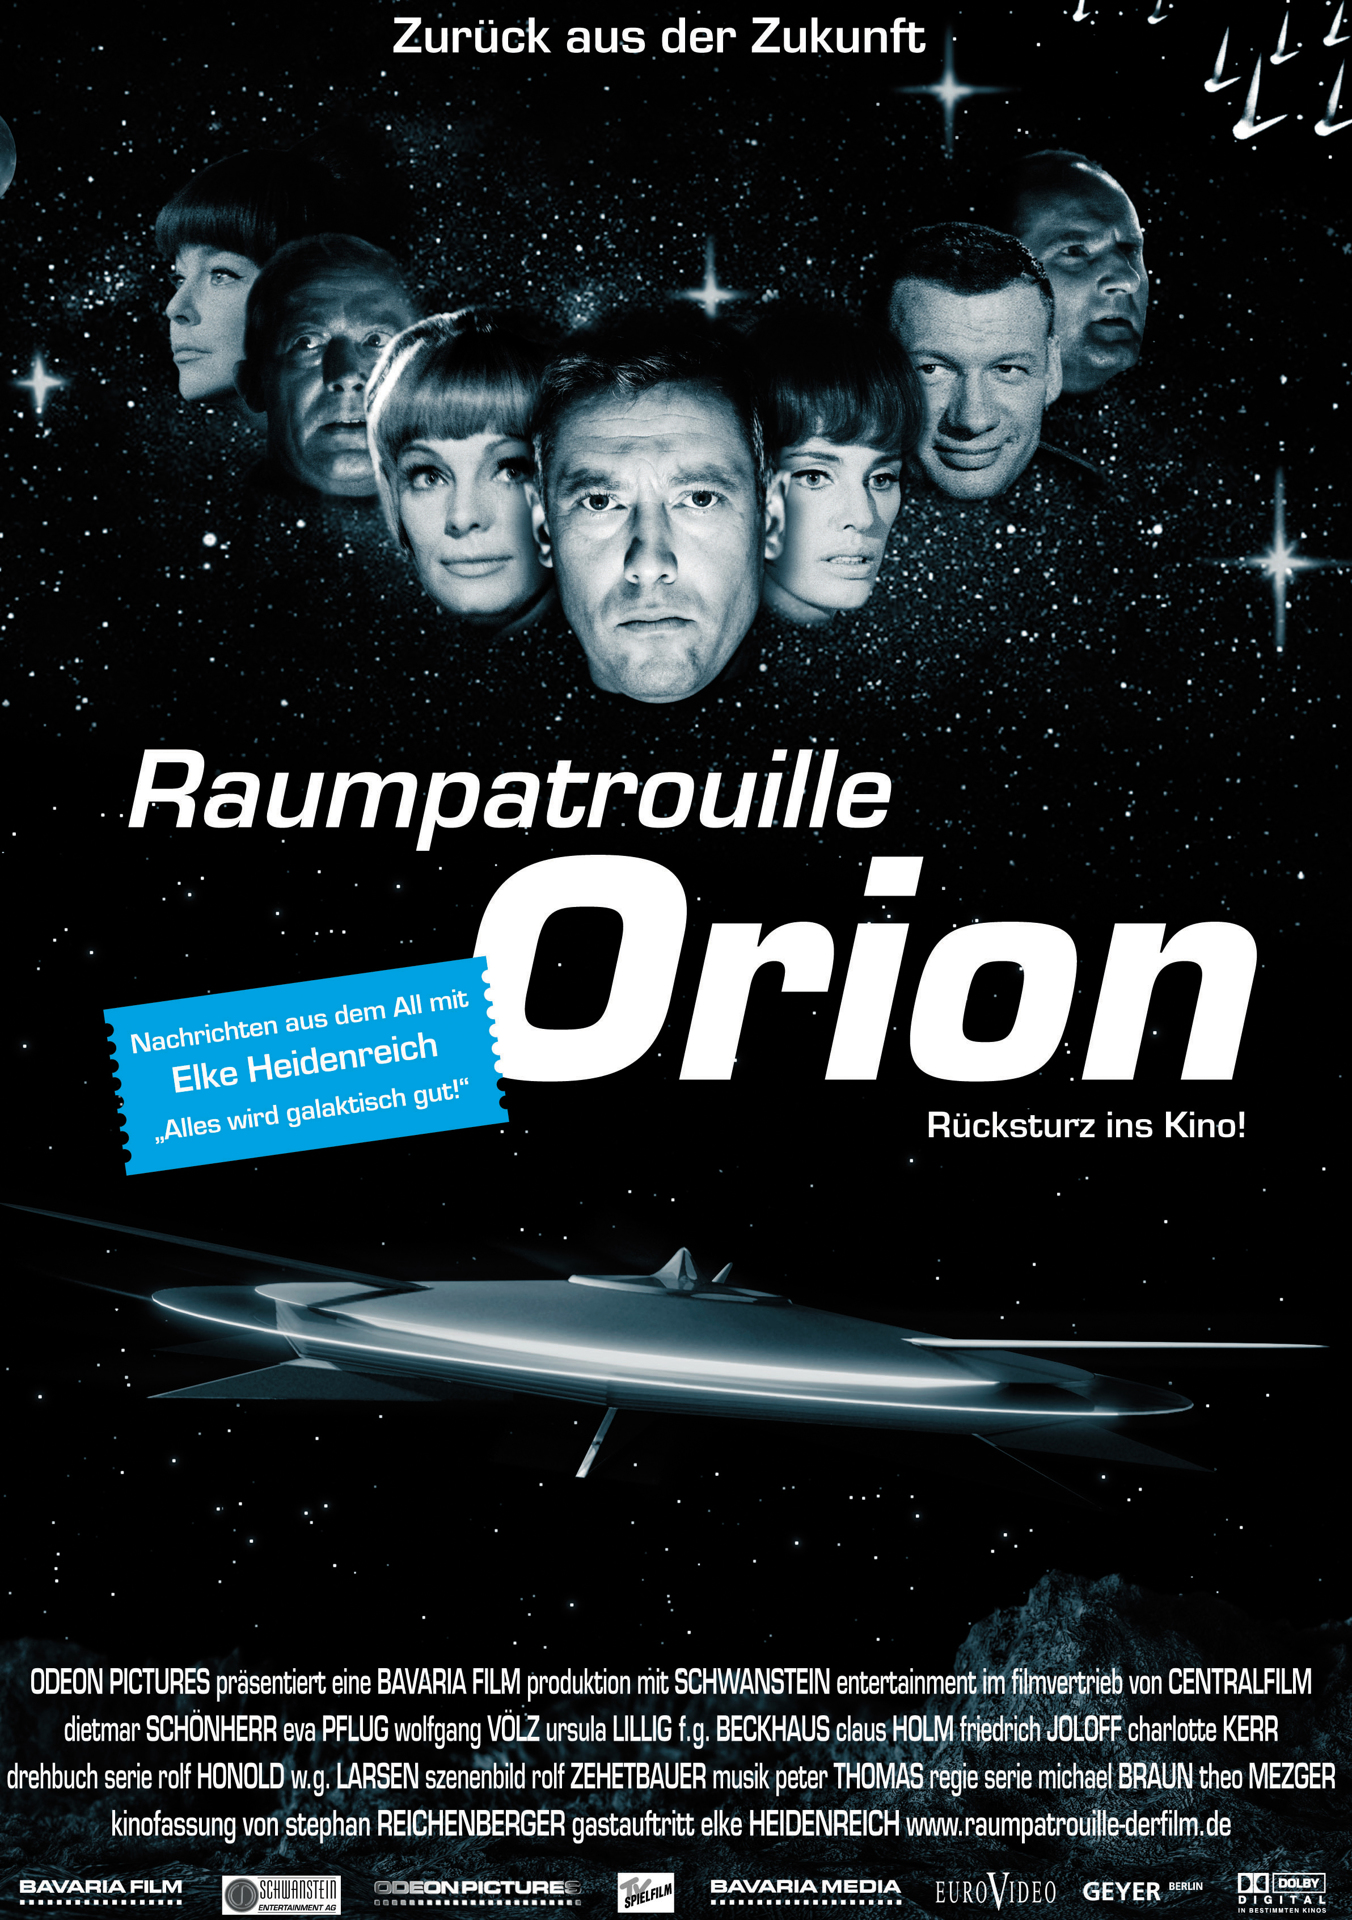 Orion űrhajó - A visszatérés